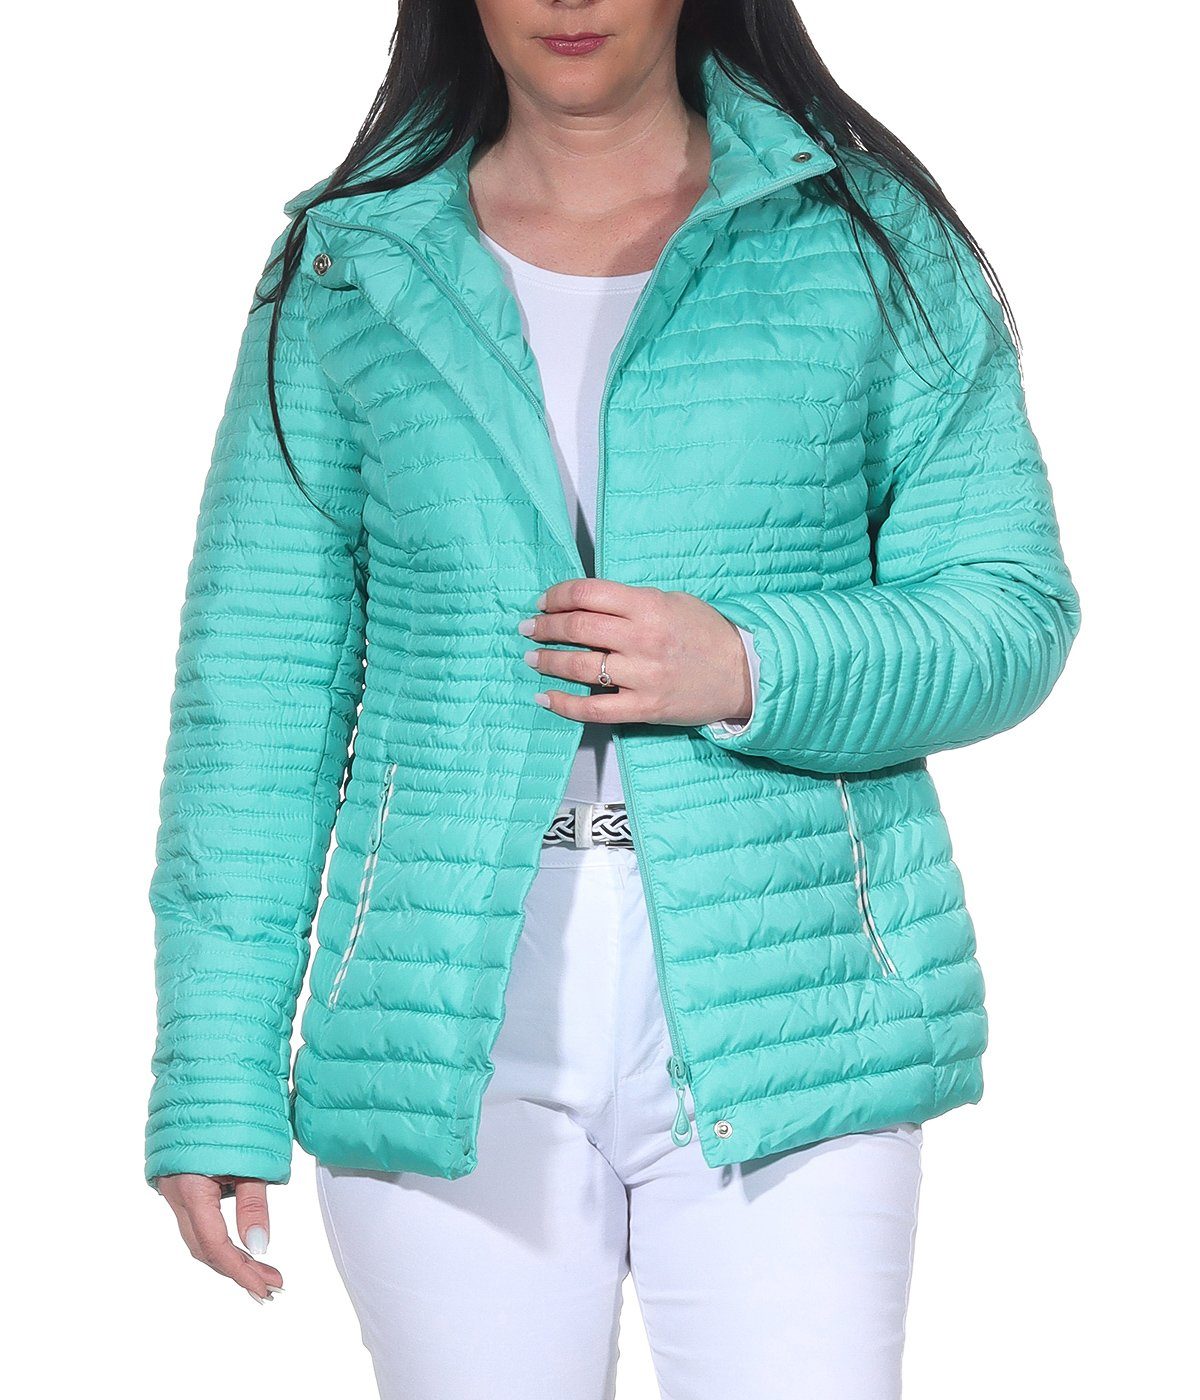 Aurela Damenmode Steppjacke Damen Sommerjacke leichte Outdoor Jacke auch in großen Größen erhältlich, angenehm leichte Übegrangsjacke Mint